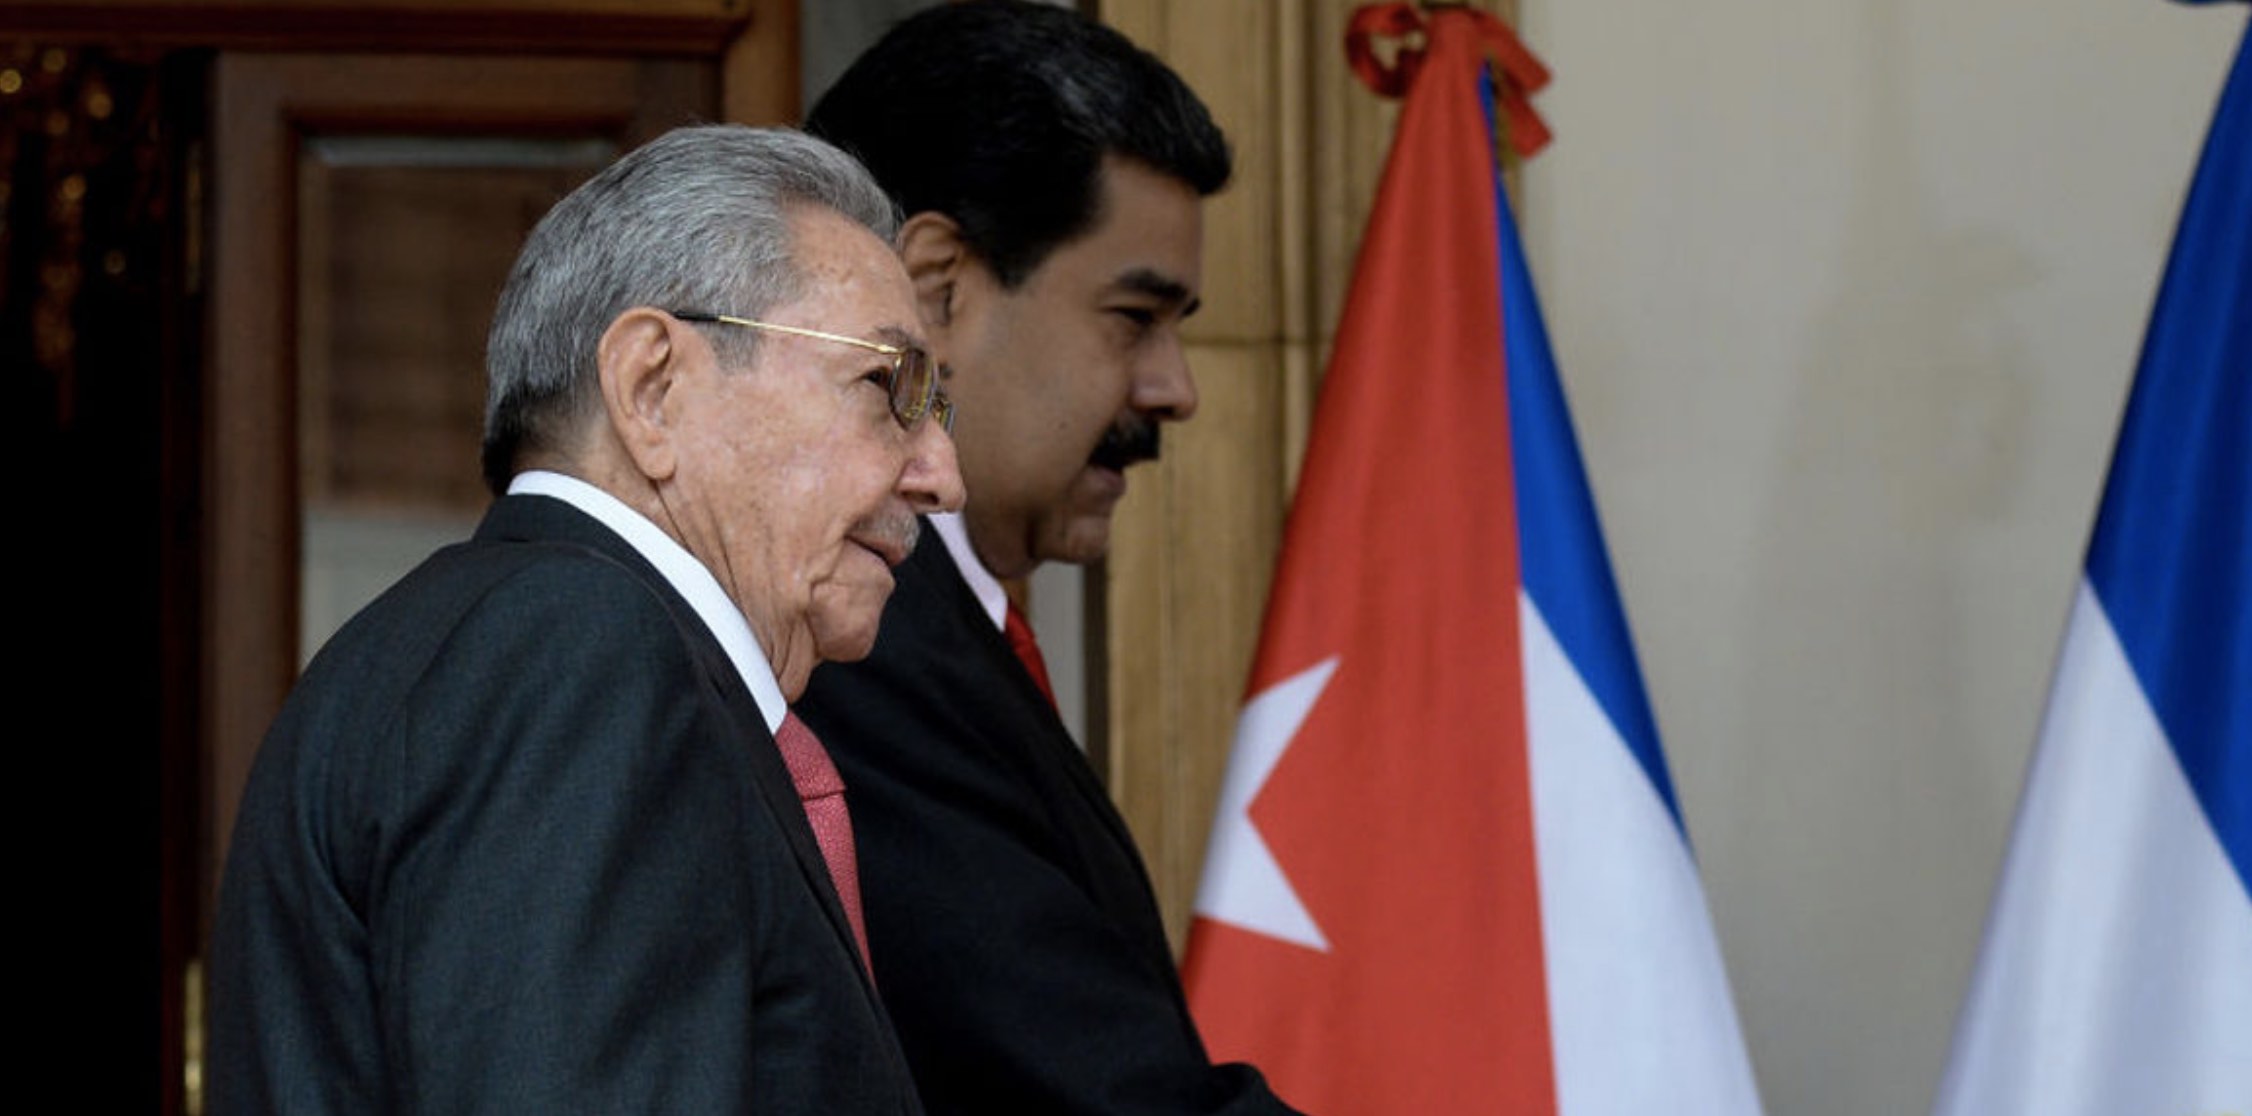 Raúl Castro, Nicolás Maduro